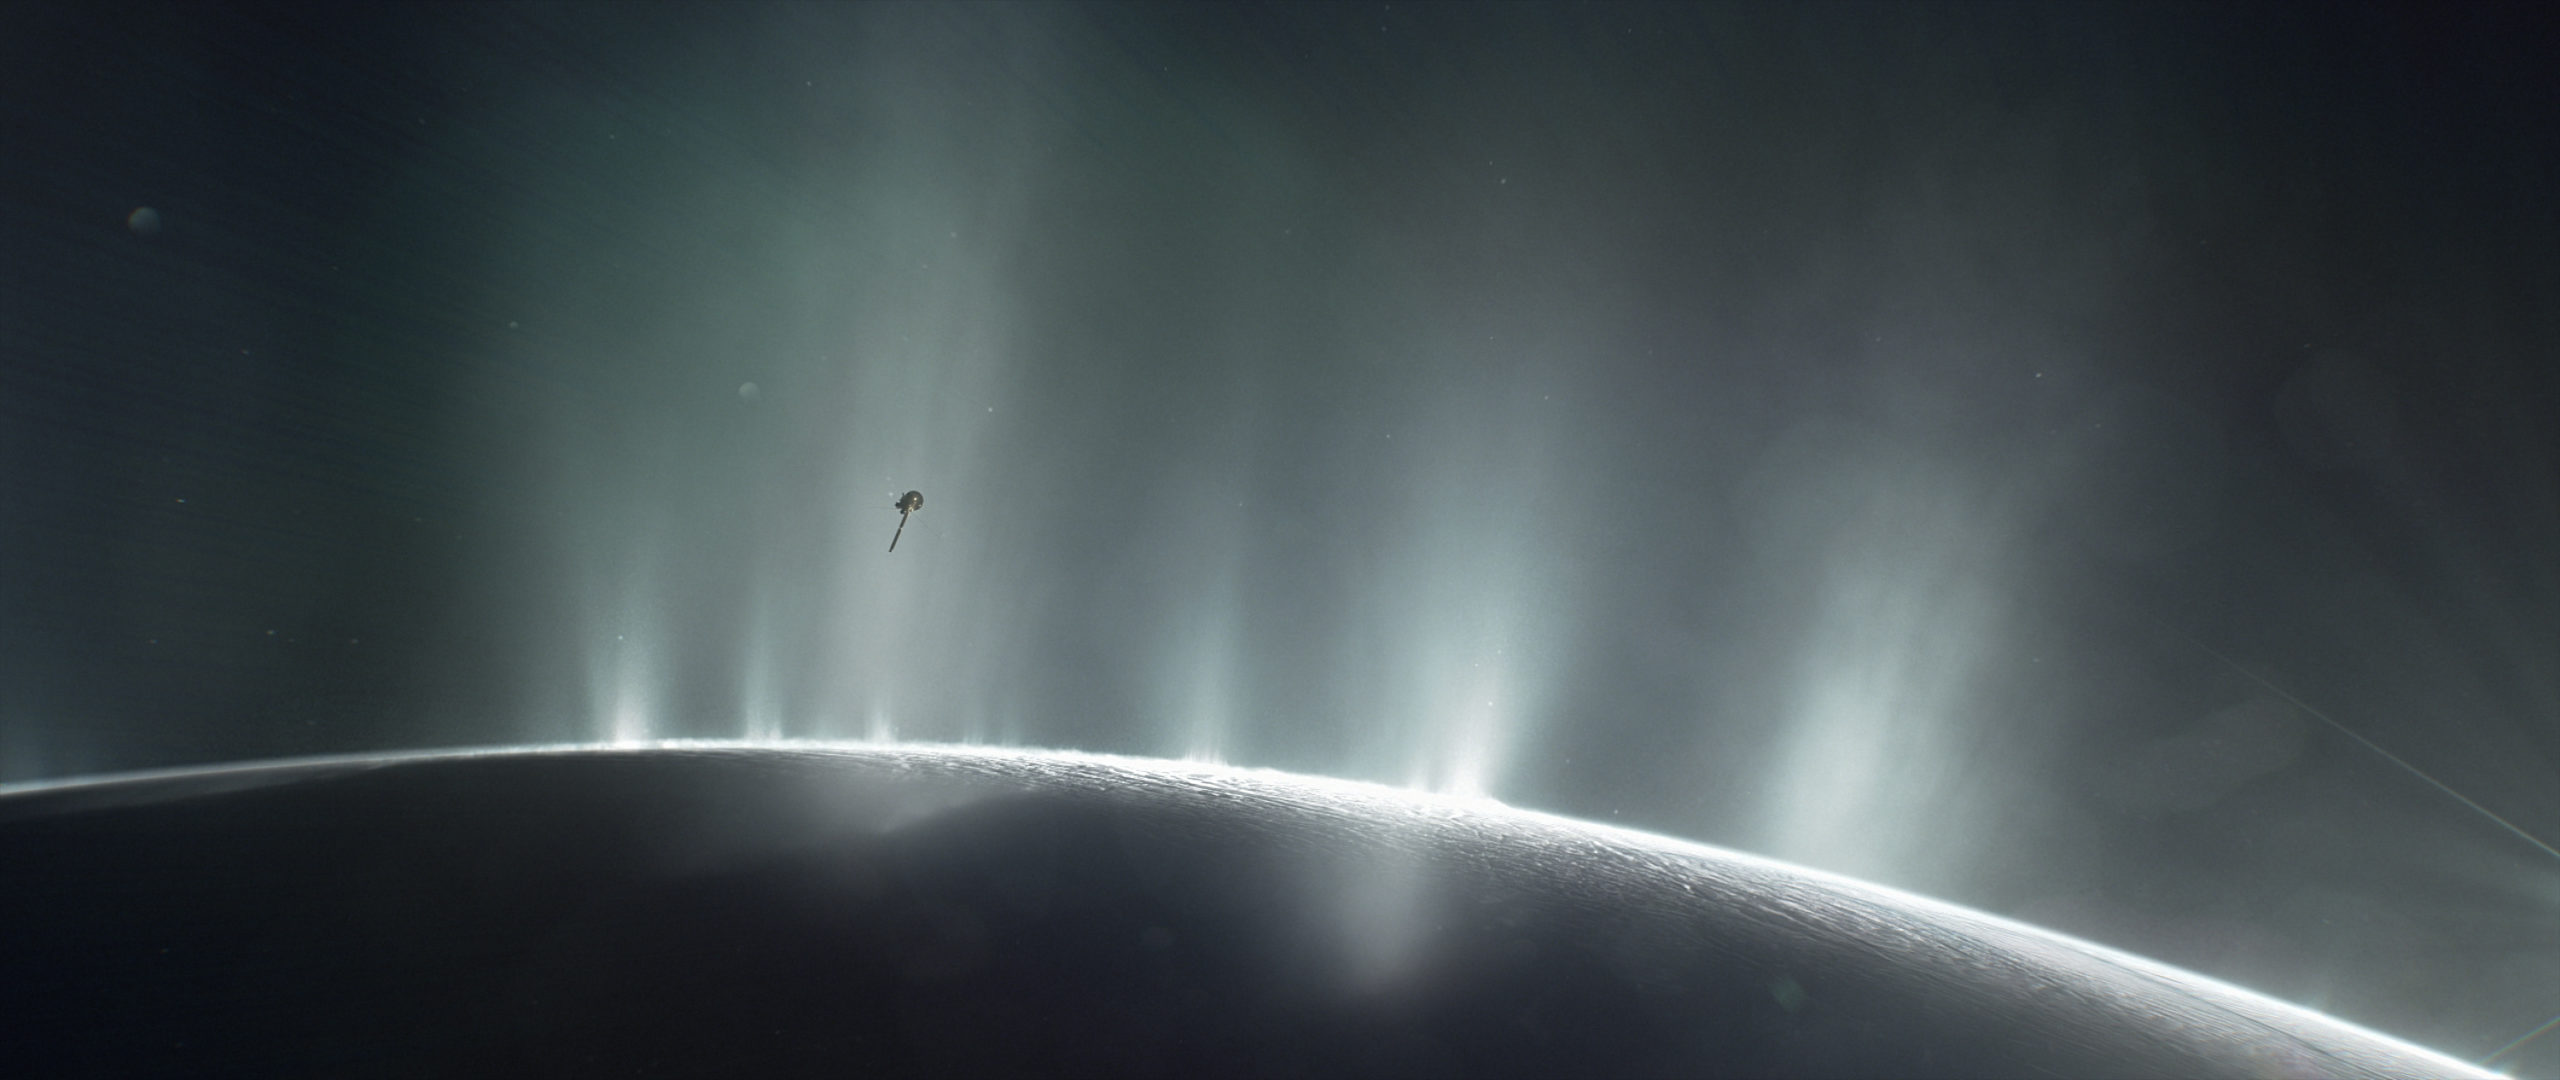 Representação artística da sonda Cassini viajando através dos gêiseres disparados de Enceladus. Crédito: NASA/JPL-Caltec